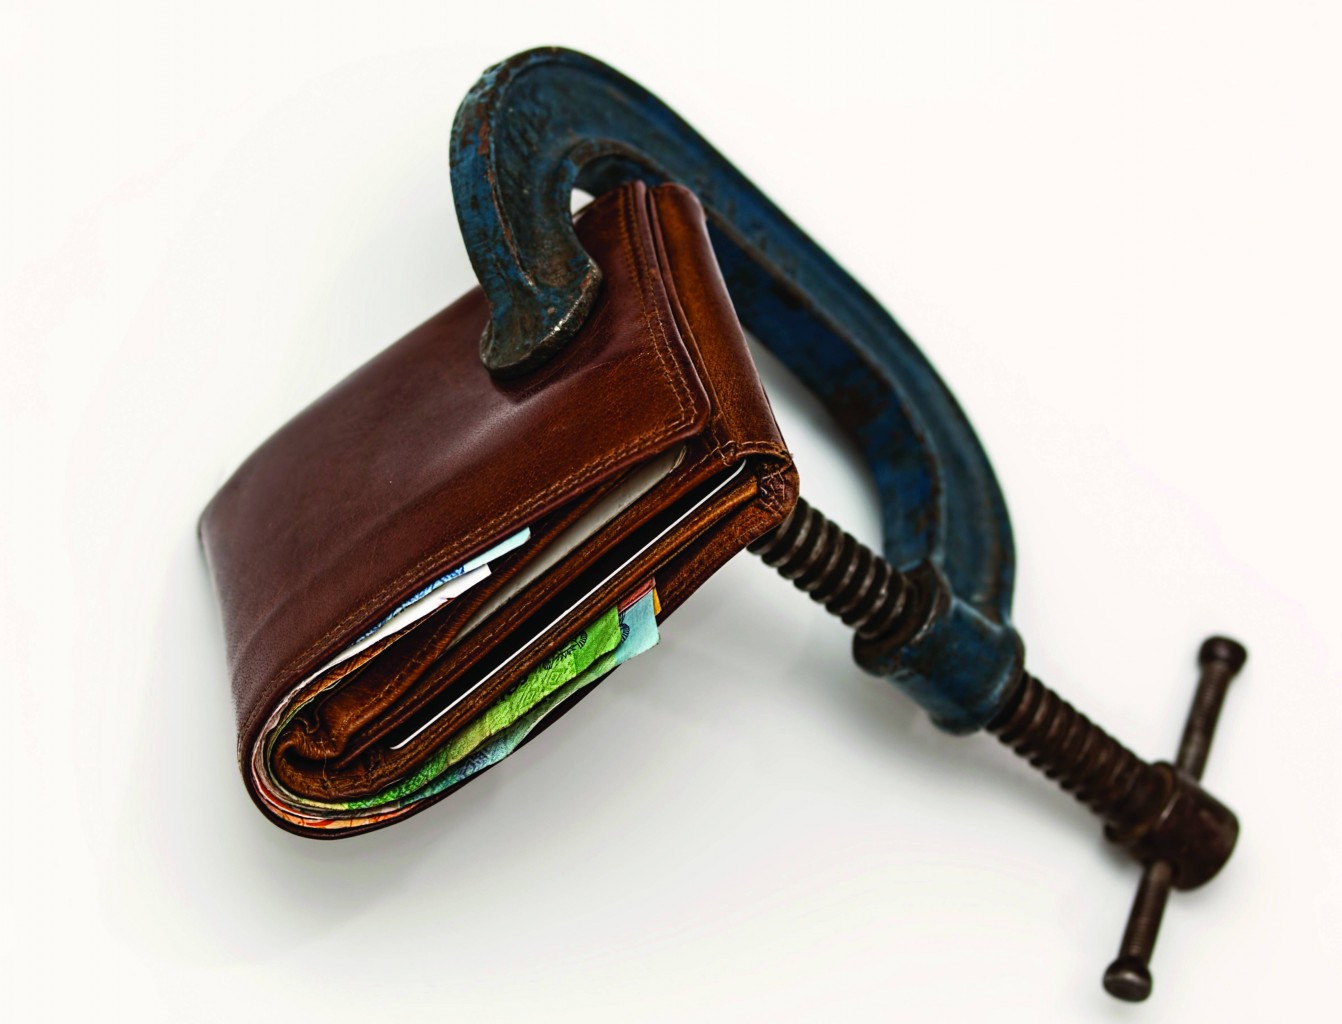 ¿Su billetera es a prueba de recesiones?